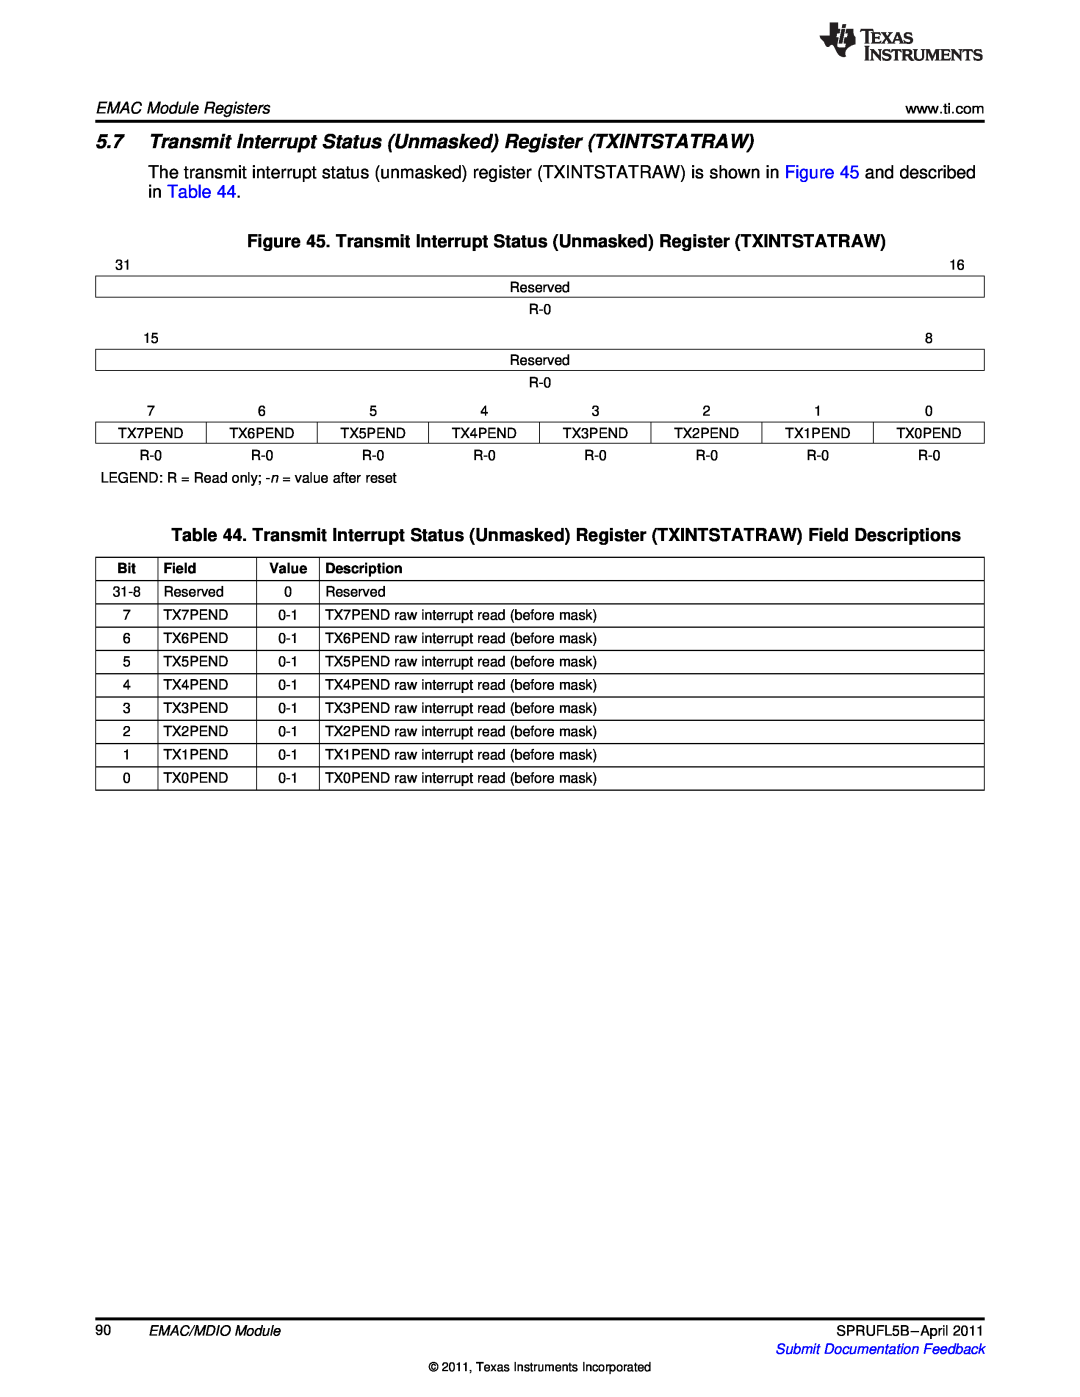 Texas Instruments TMS320C674X manual Transmit Interrupt Status Unmasked Register TXINTSTATRAW, EMAC Module Registers, Field 